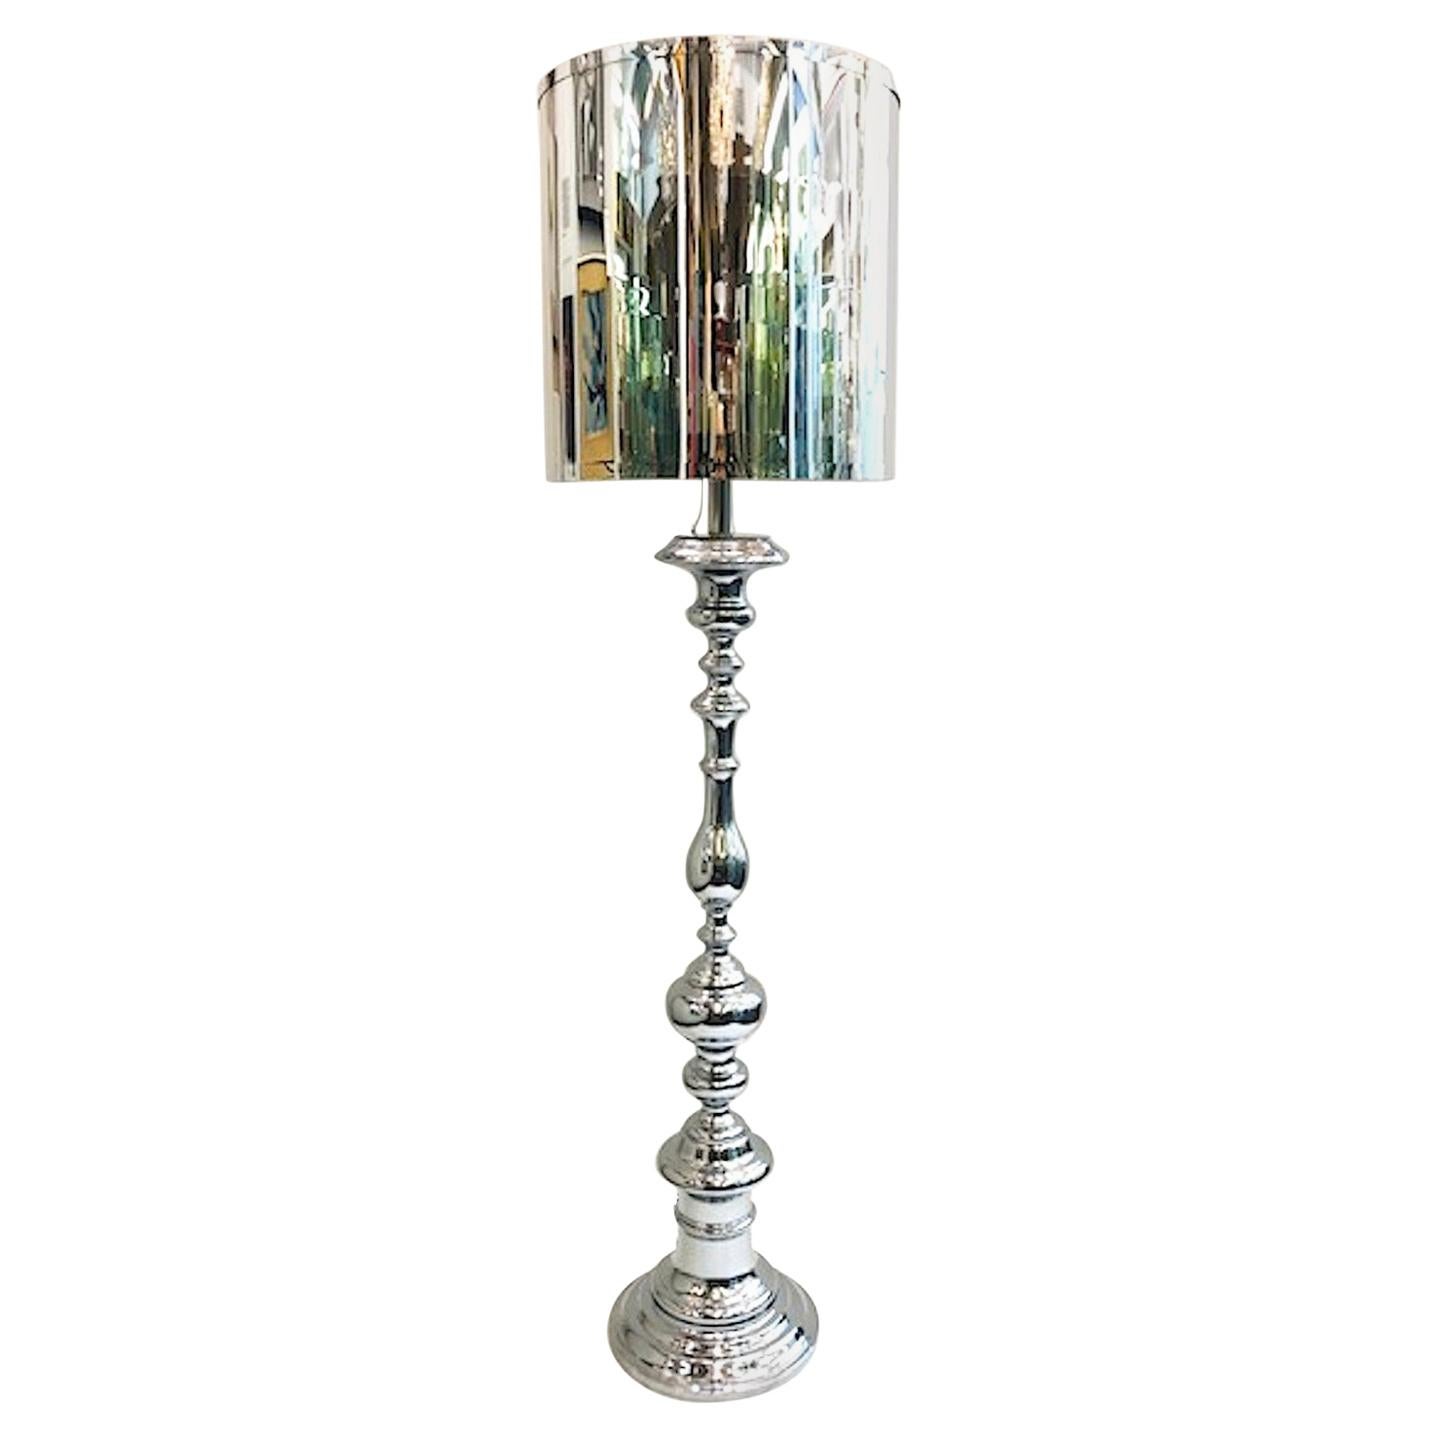 Lampadaire italien en chrome des années 1970, dont la forme rappelle un chandelier en bois tourné